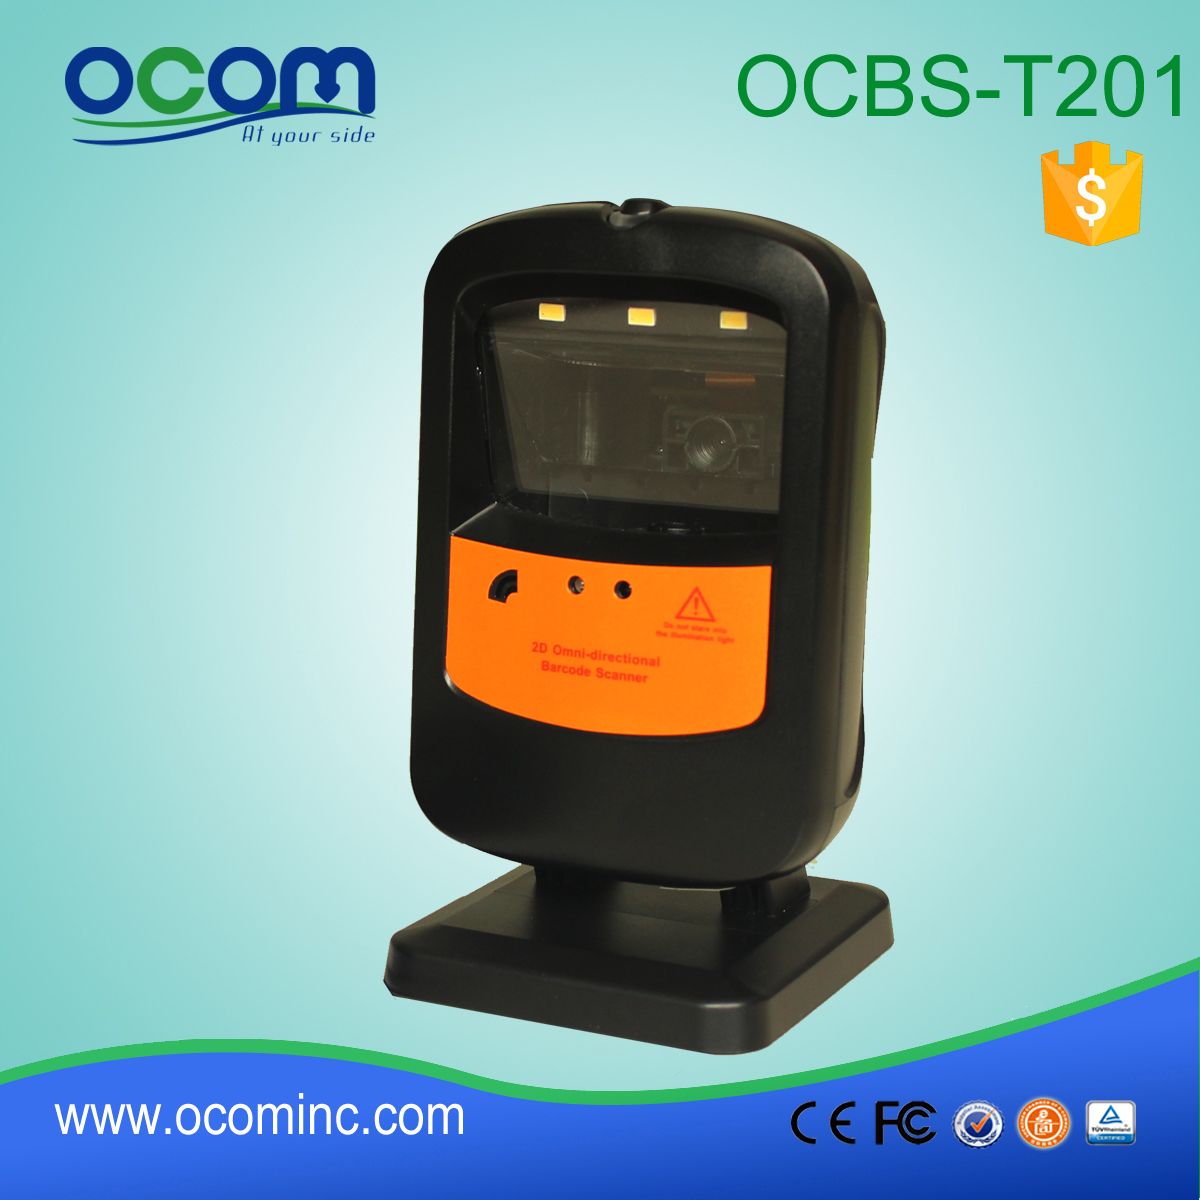 OCBS-T201: nouveau code à barres d'alimentation prix de lecteur, tablette avec lecteur de codes barres